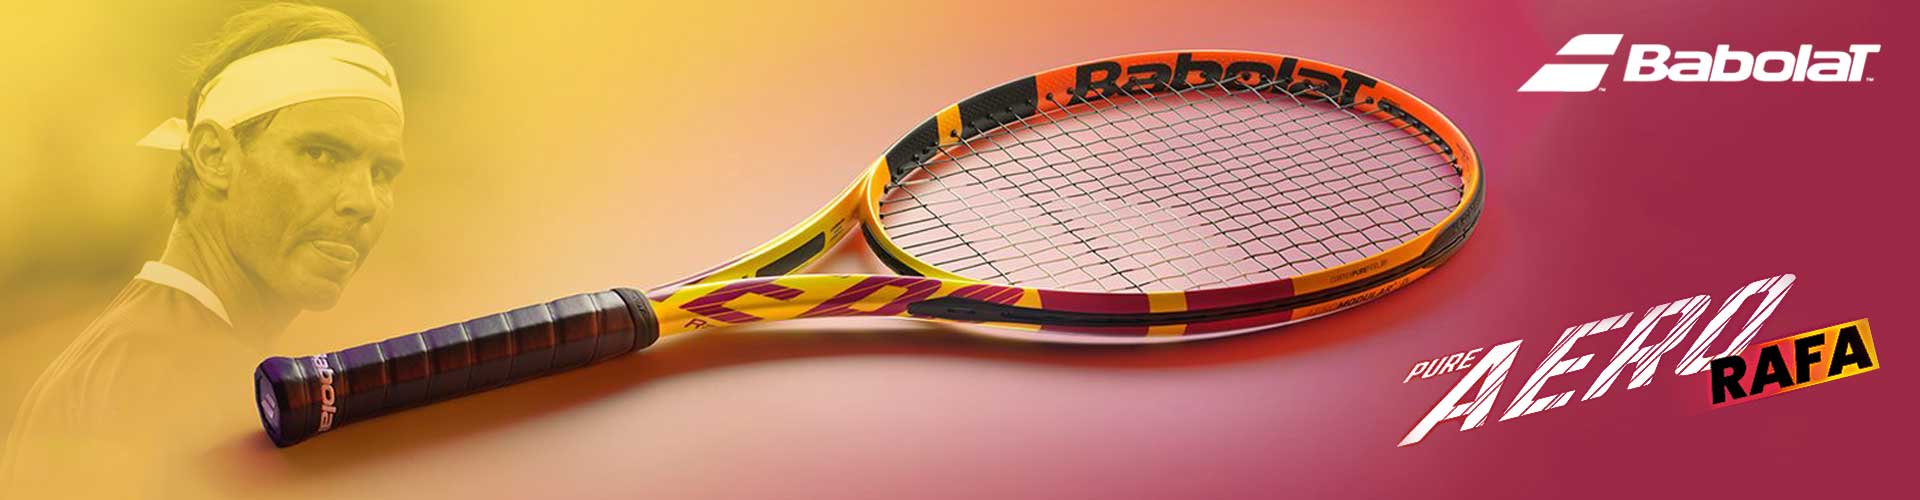 Raak verstrikt Kritisch Zuidoost Buy Babolat Tennis Racquets Online in India at lowest prices -  Racquets4u.com